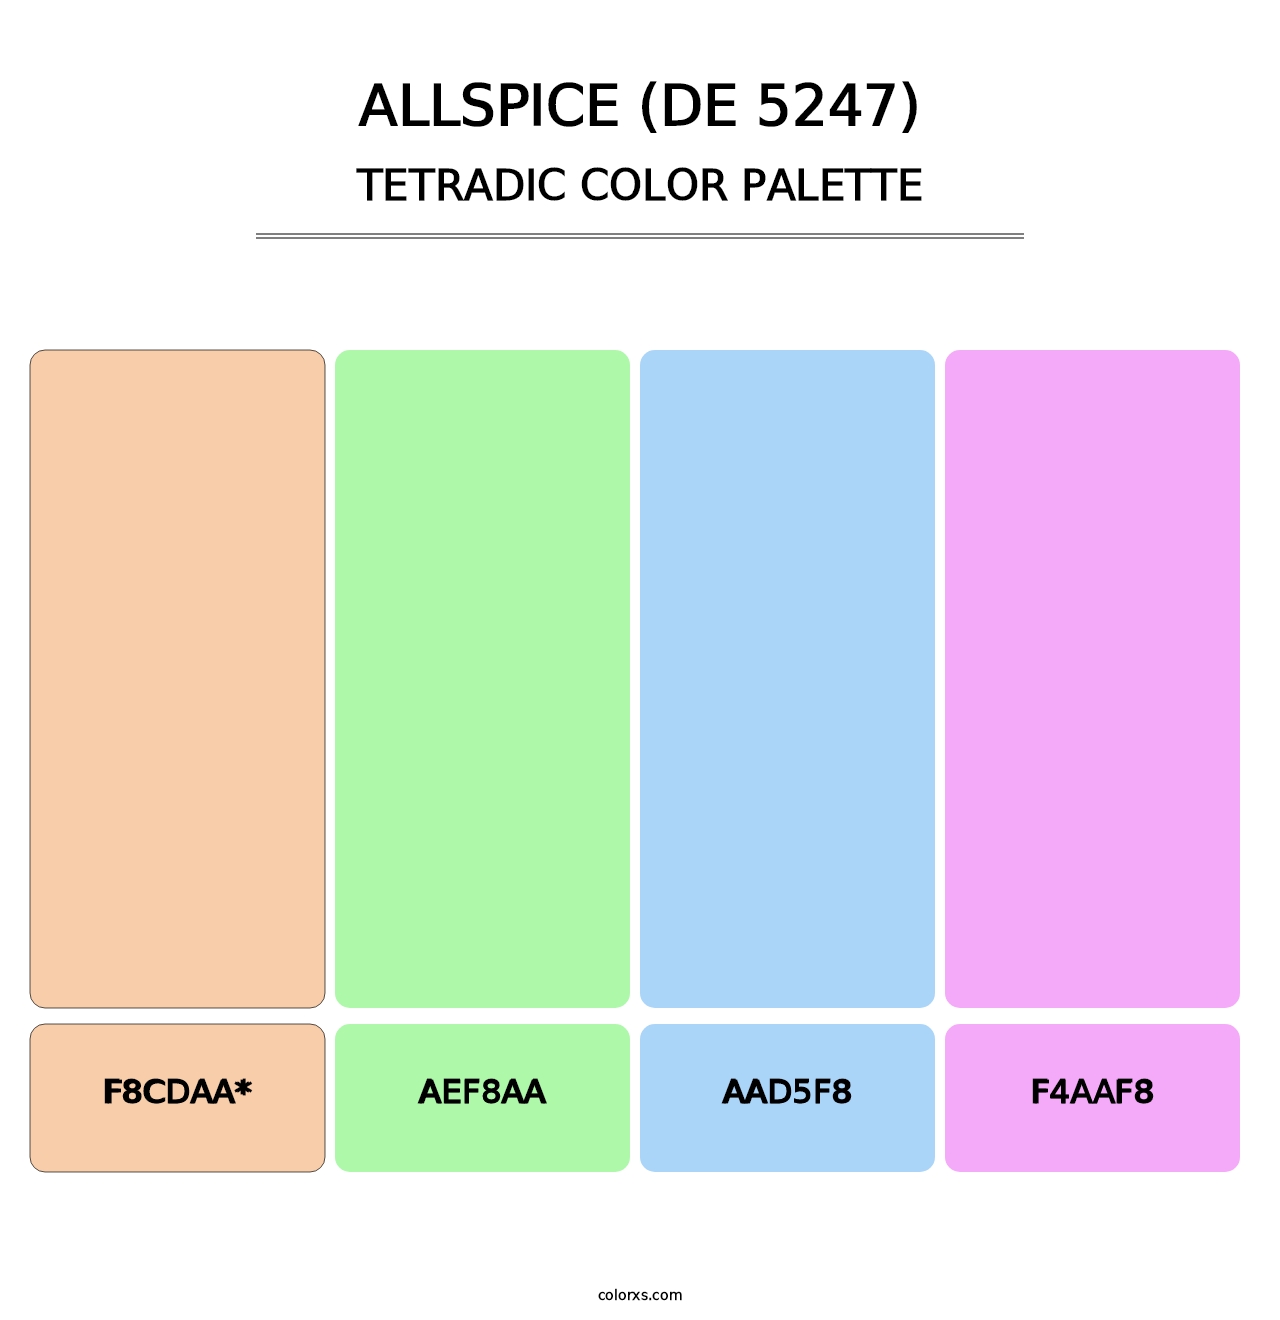 Allspice (DE 5247) - Tetradic Color Palette